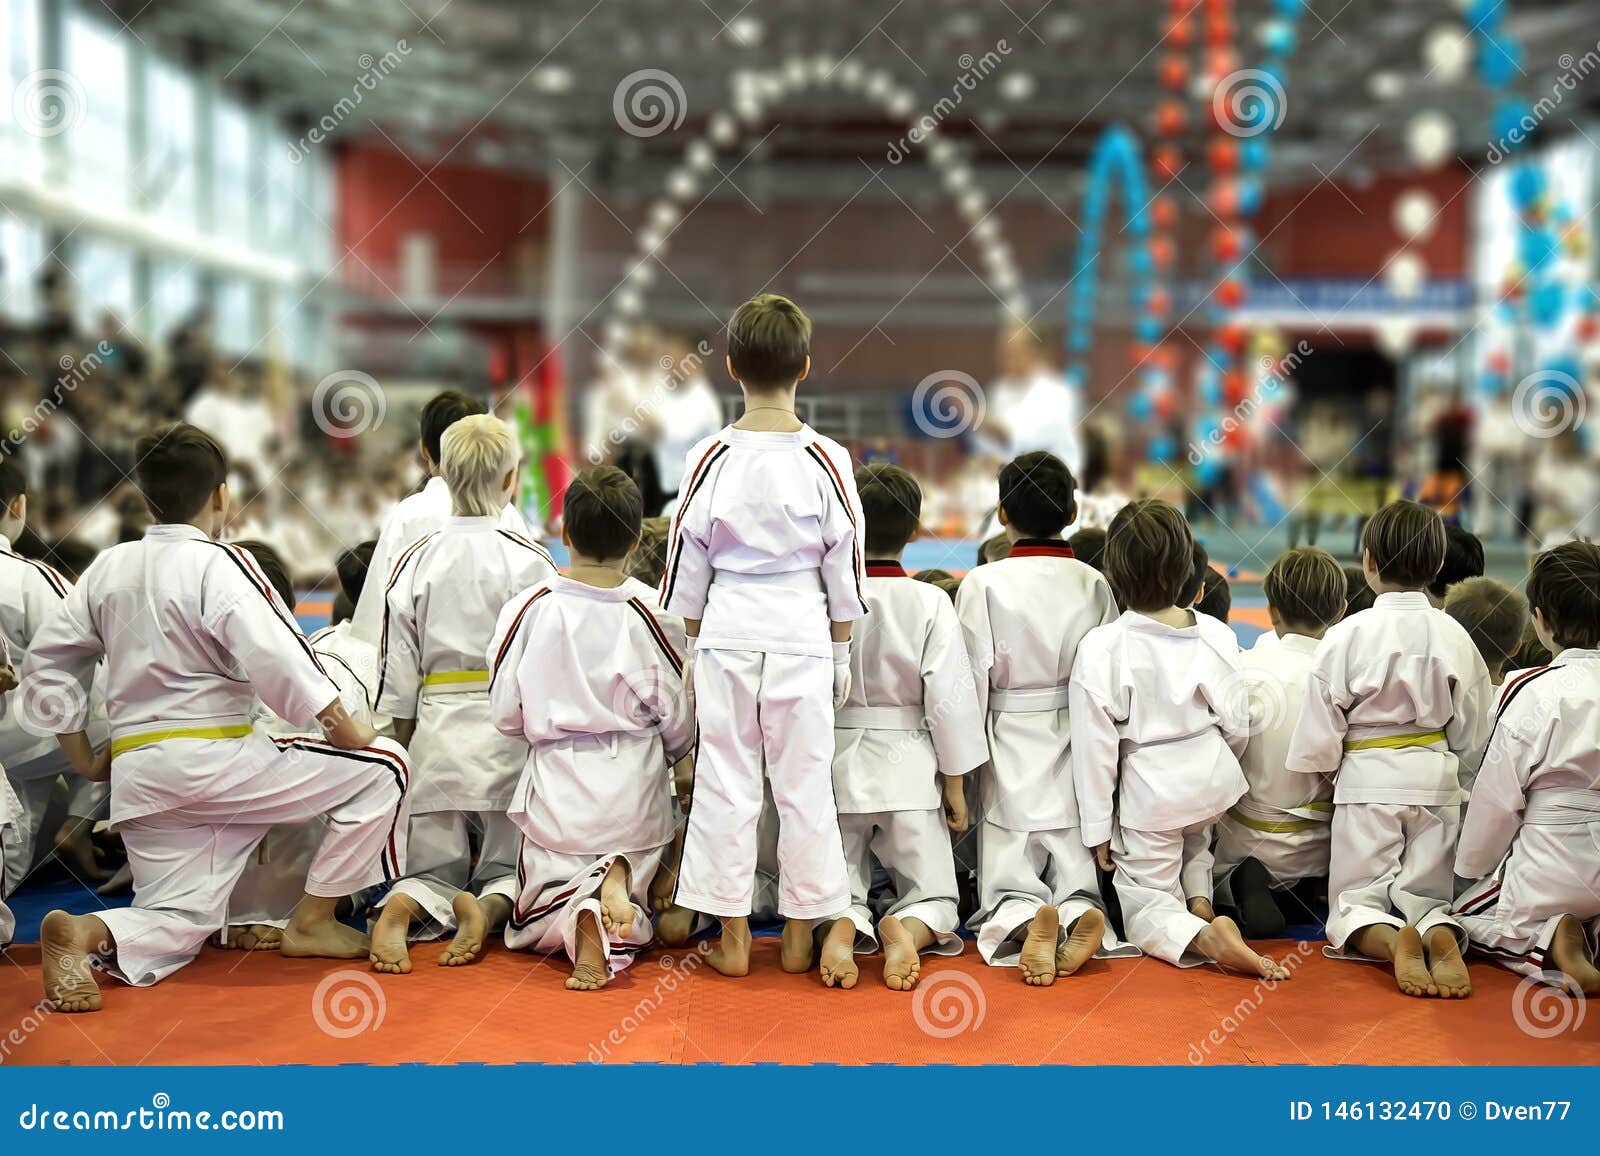 A Group of Children in Kimono